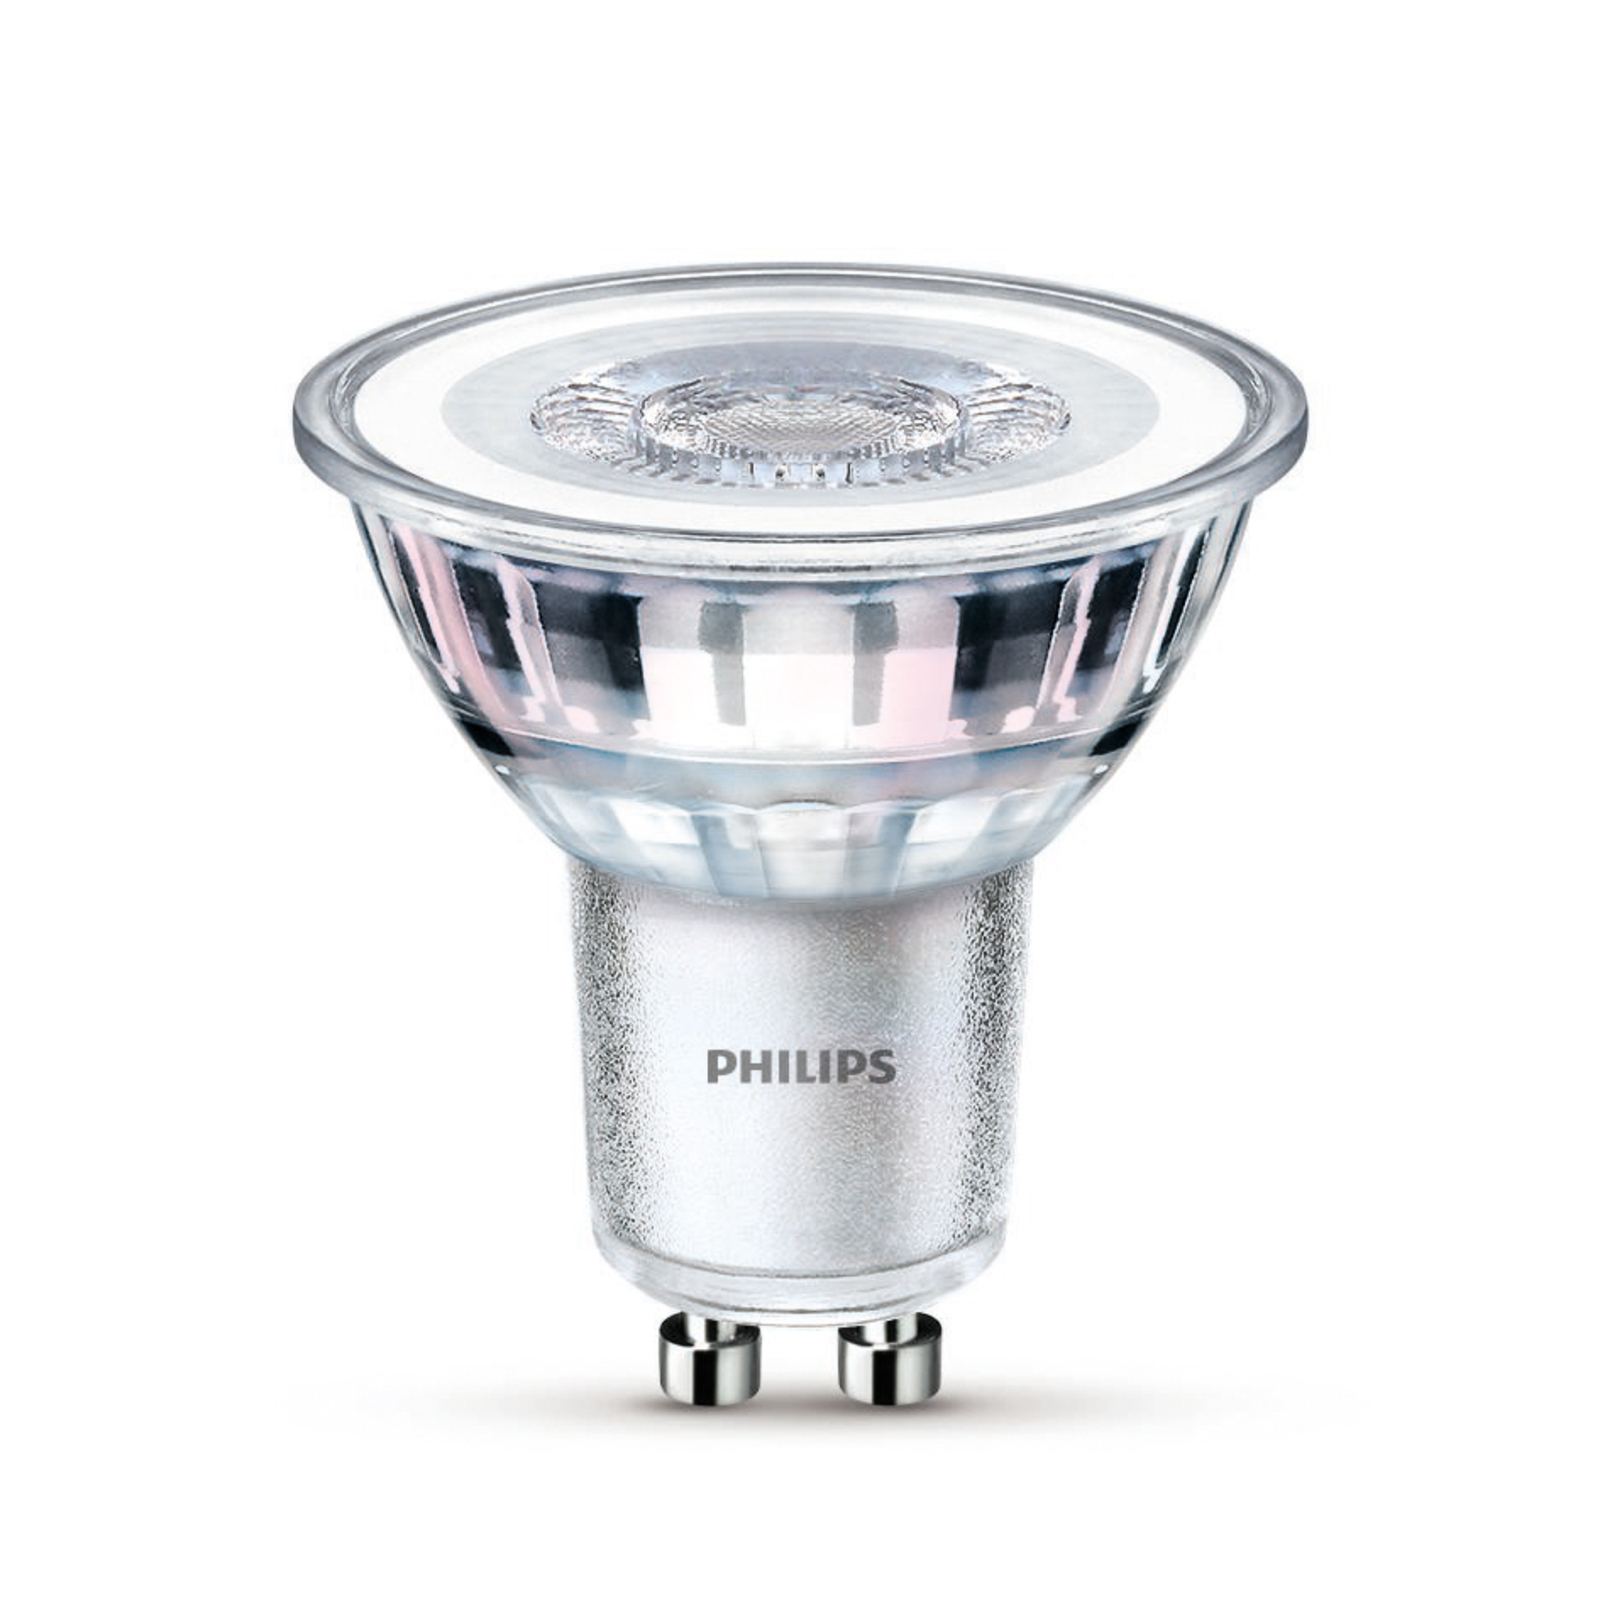 Philips żarówka LED GU10 4,6W 355lm 827 36° 3 szt.